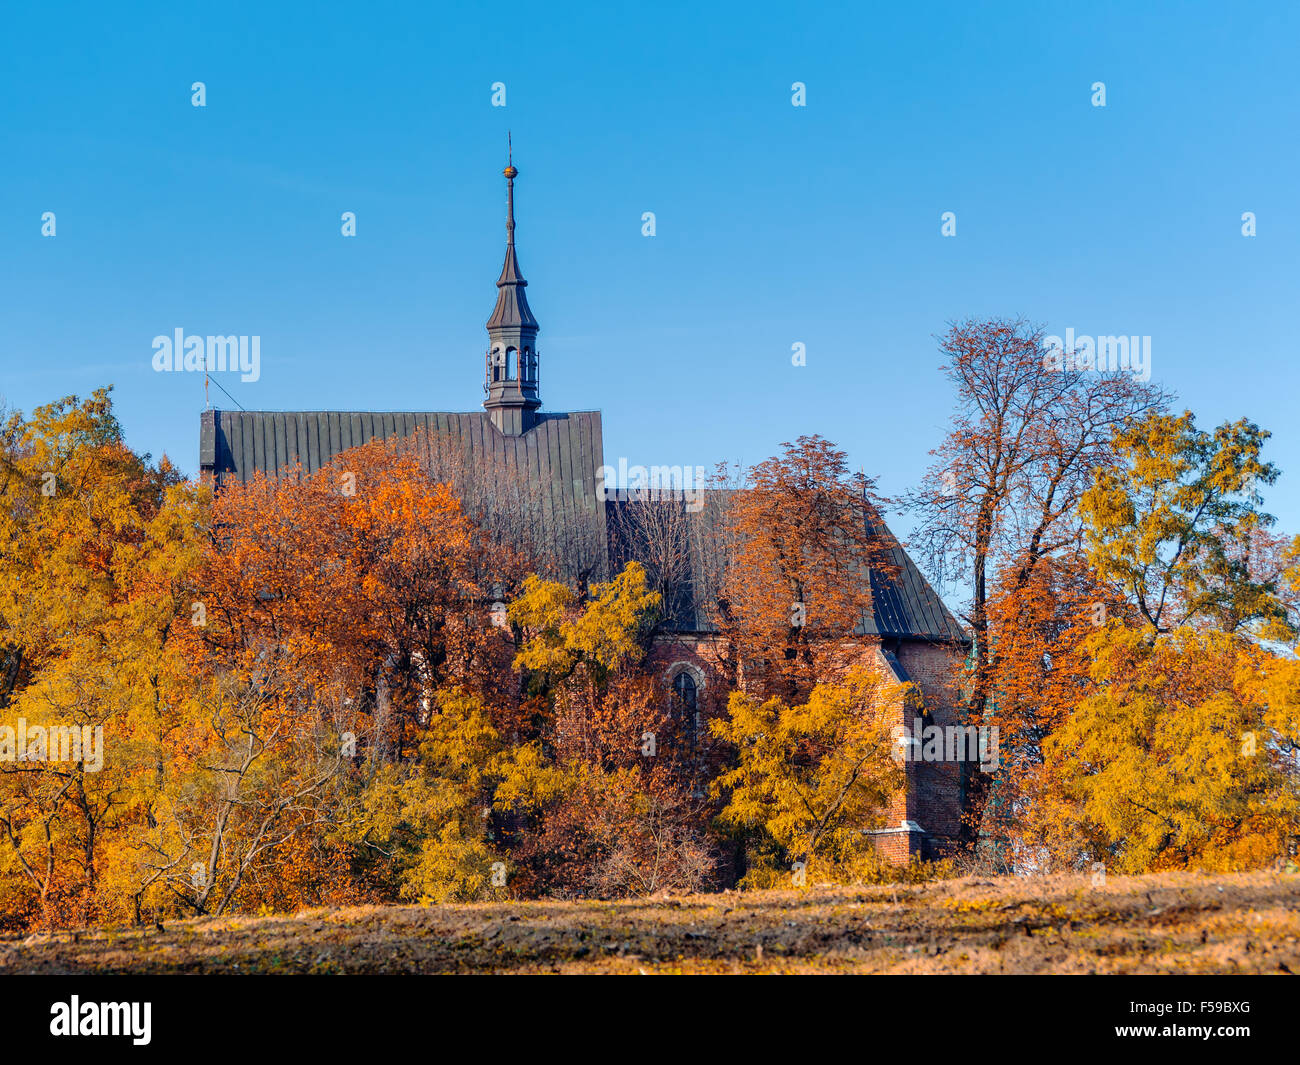 Campagne Église vieille-catholique, entouré d'arbres en couleurs d'automne avec ciel bleu clair Banque D'Images